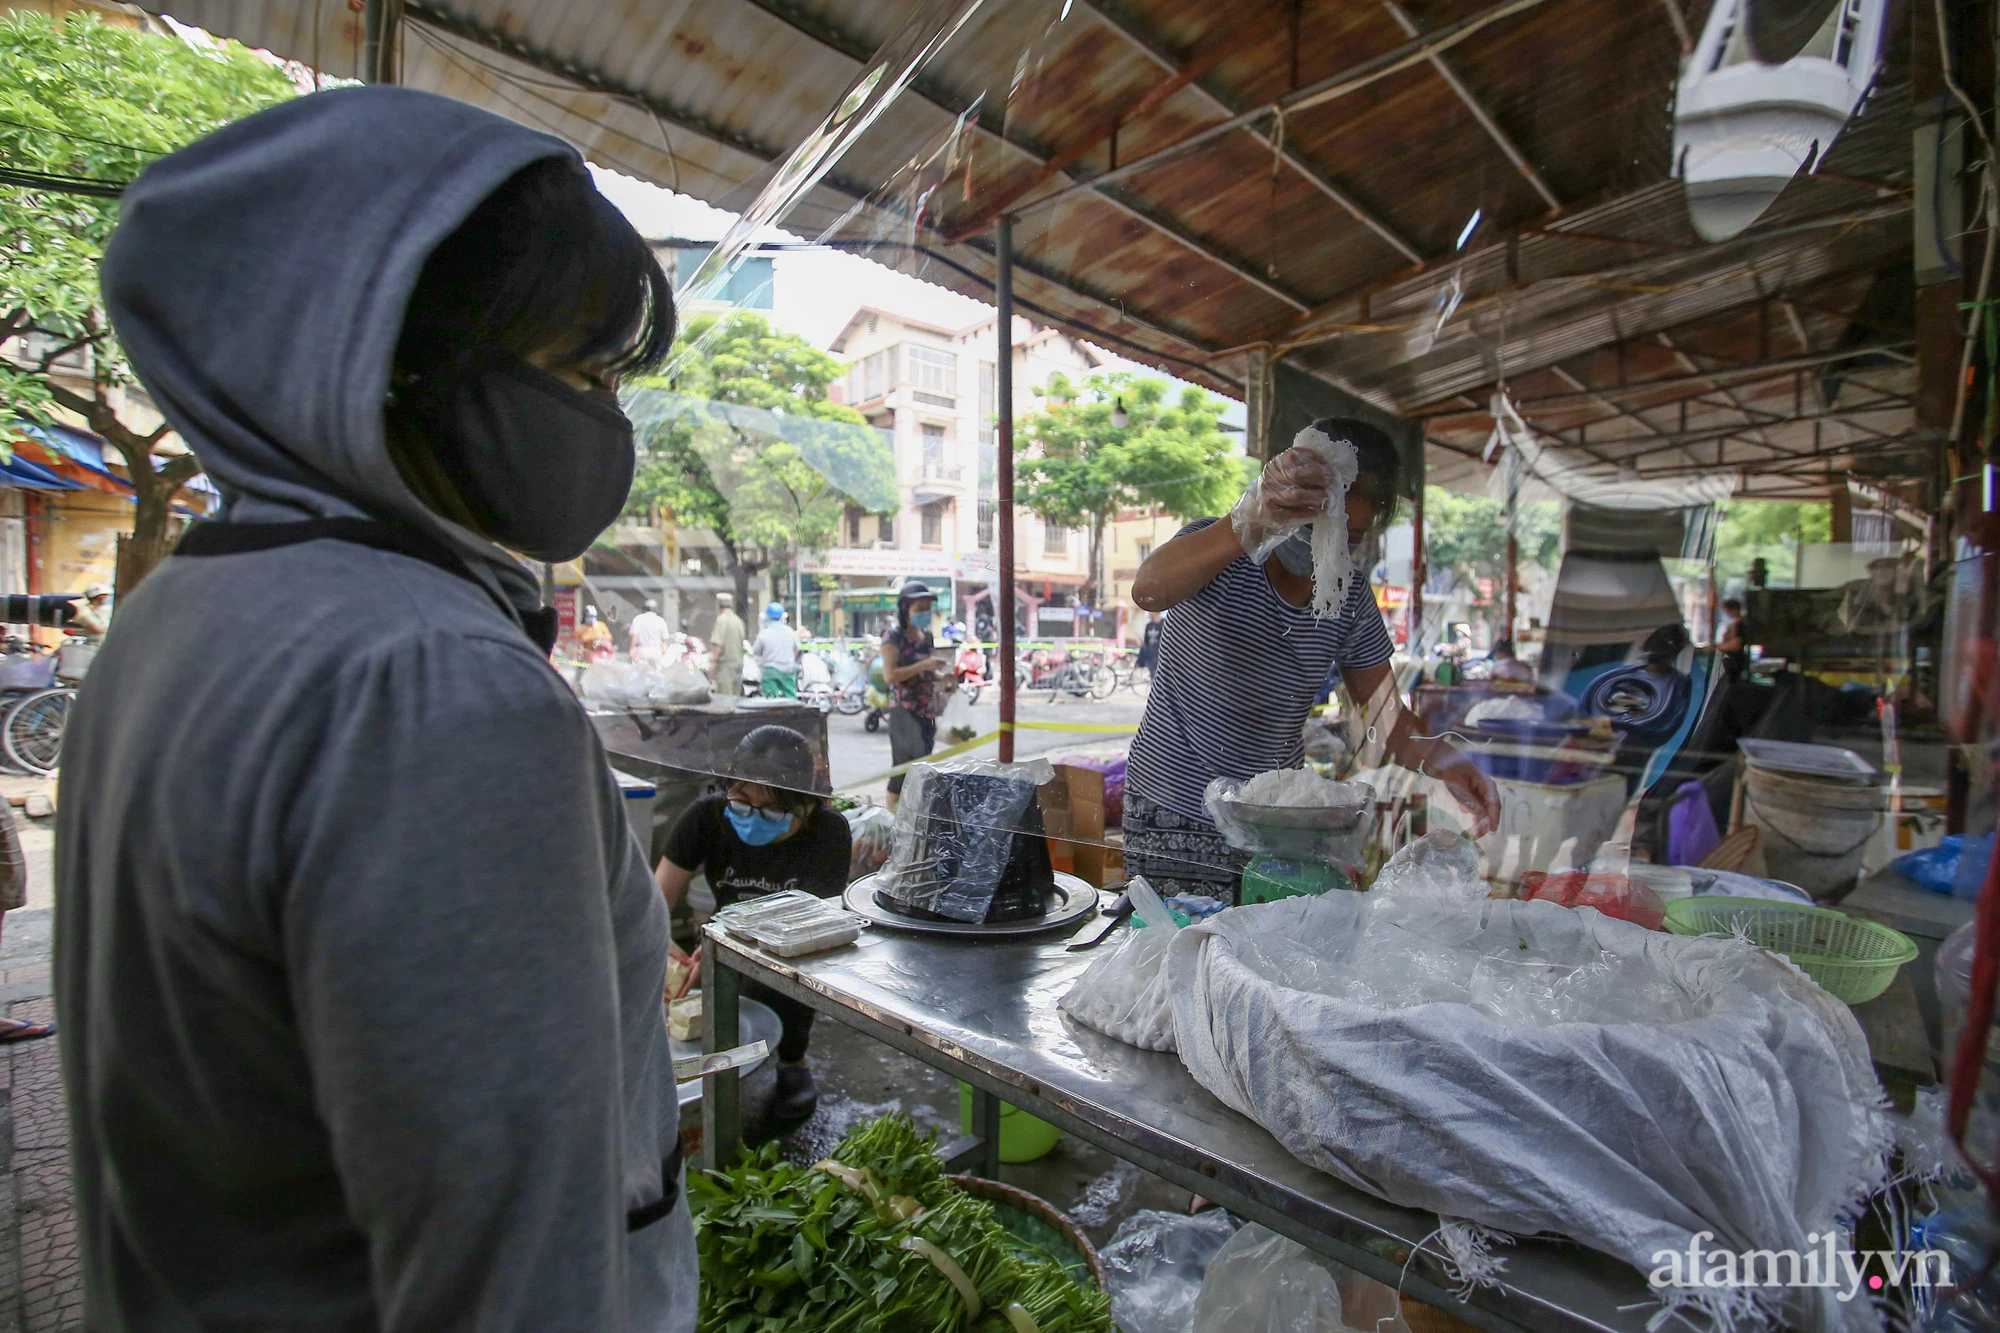 Ấn tượng với khu chợ dân sinh đầu tiên ở Hà Nội quây tấm nilon phòng dịch COVID-19, tiểu thương chia ca đứng bán theo ngày chẵn, lẻ - Ảnh 3.